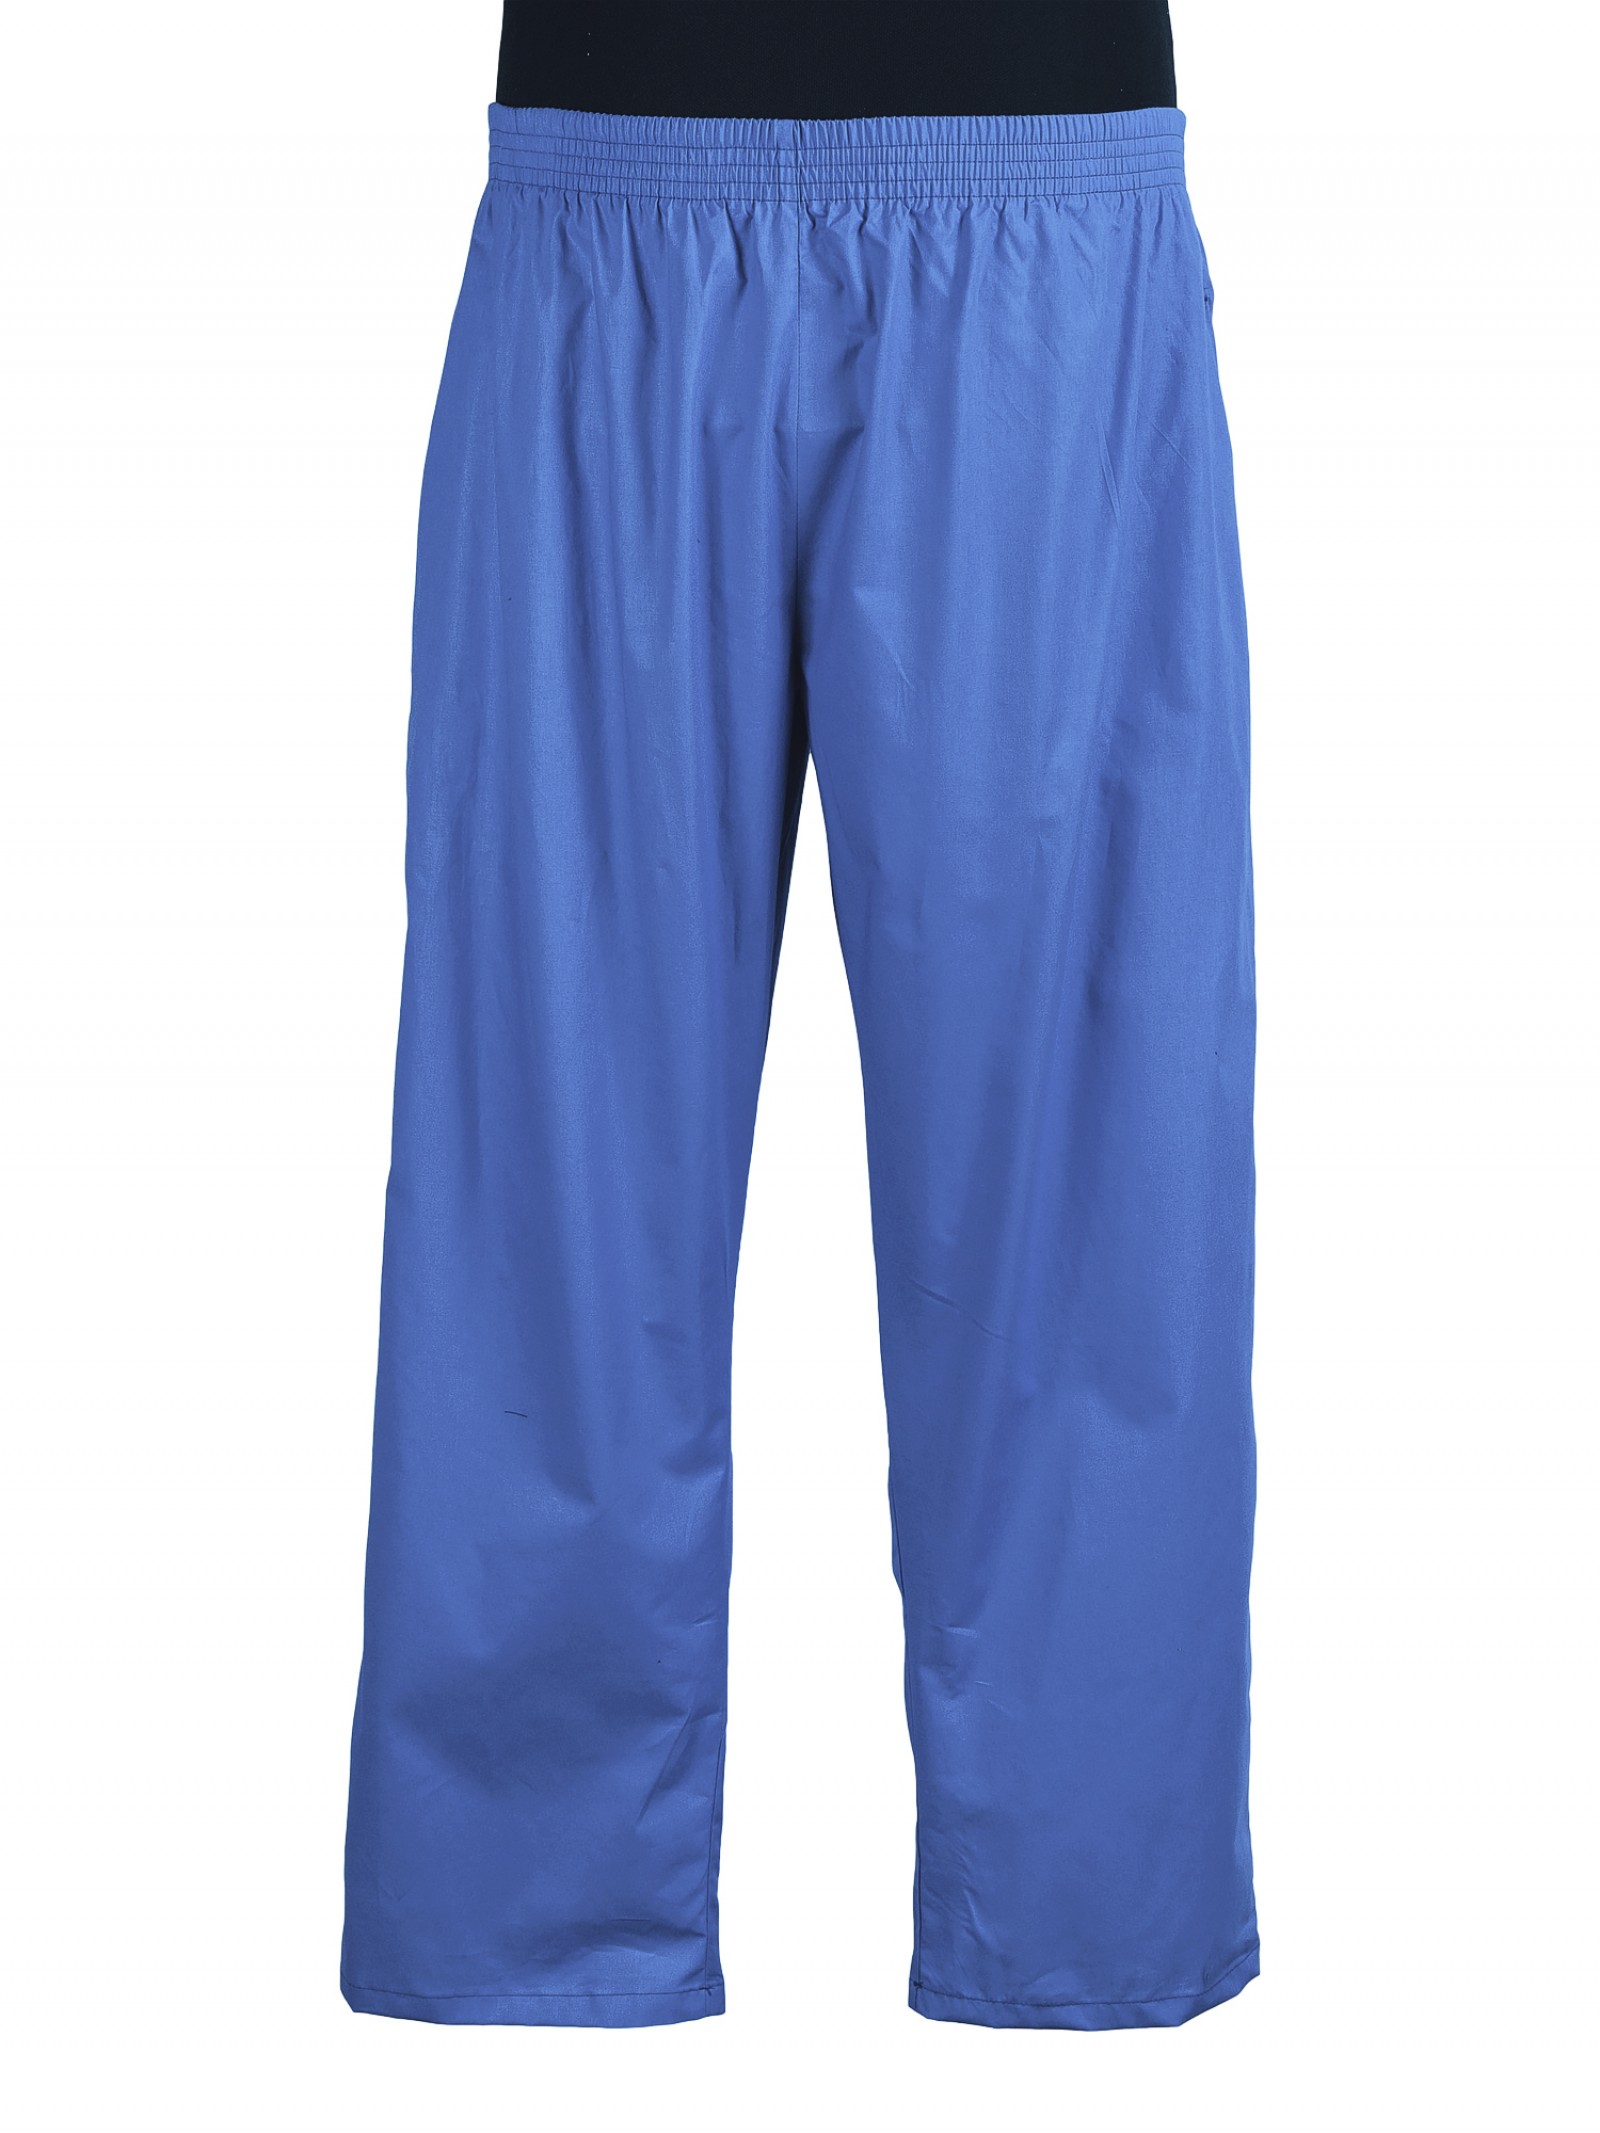 Легкие брюки. Спортивные брюки синие на резинке из хлопка. Лёгкие брюки на резинке. Прямые легкие брюки на резинке. Легкие брюки на резинке